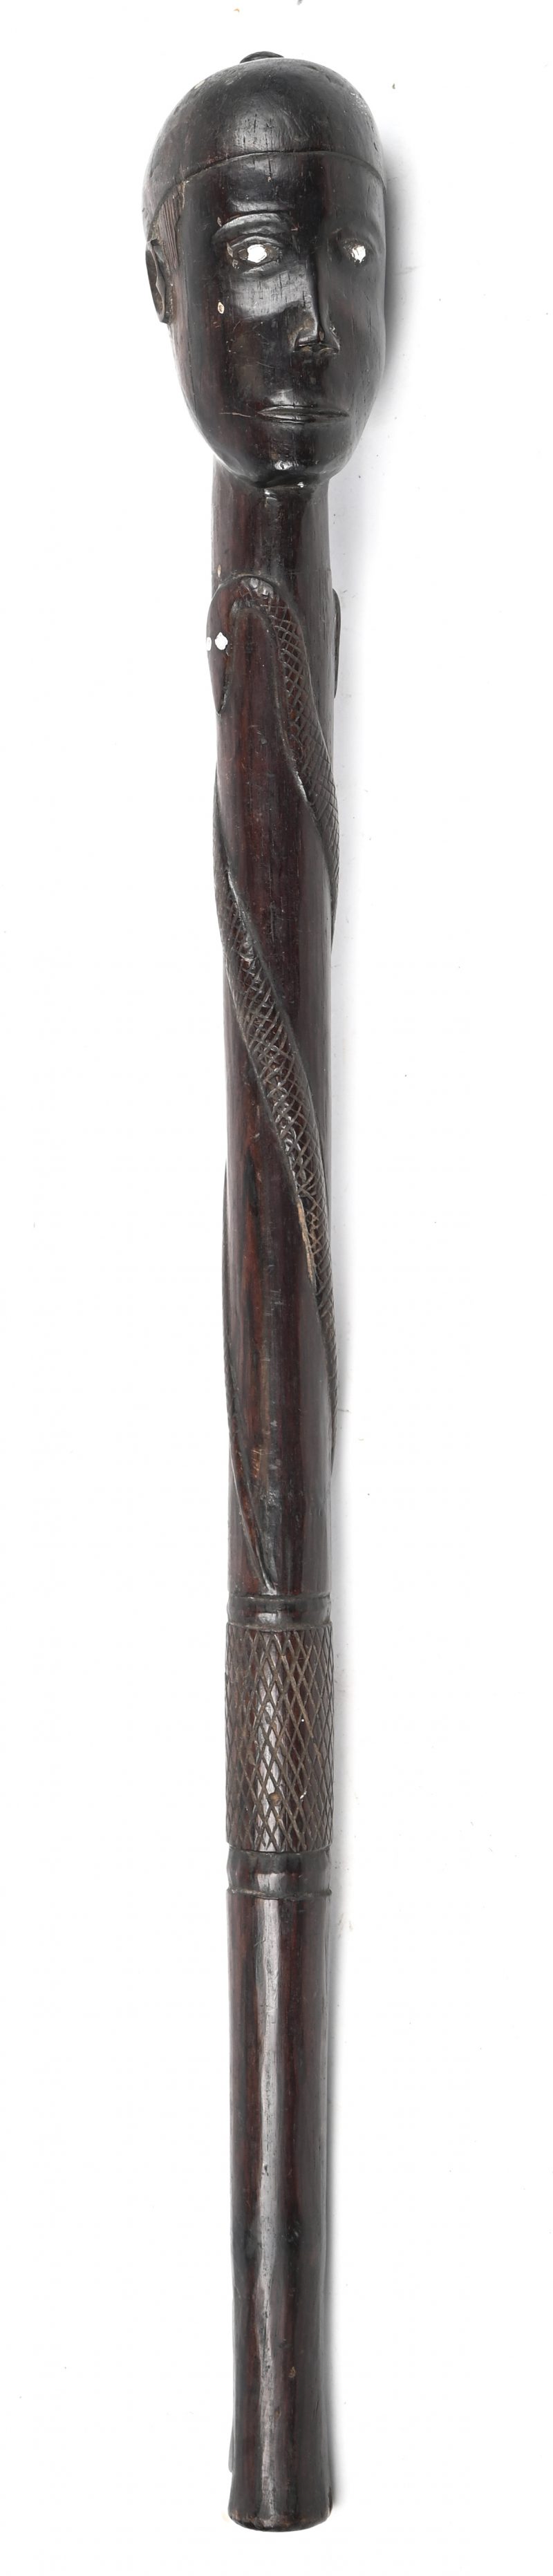 Een houten gesculpteerd ceremoniële scepter met hoofd en slang versierd. Vermoedelijk Chokwe, Angola, begin 20e eeuw.